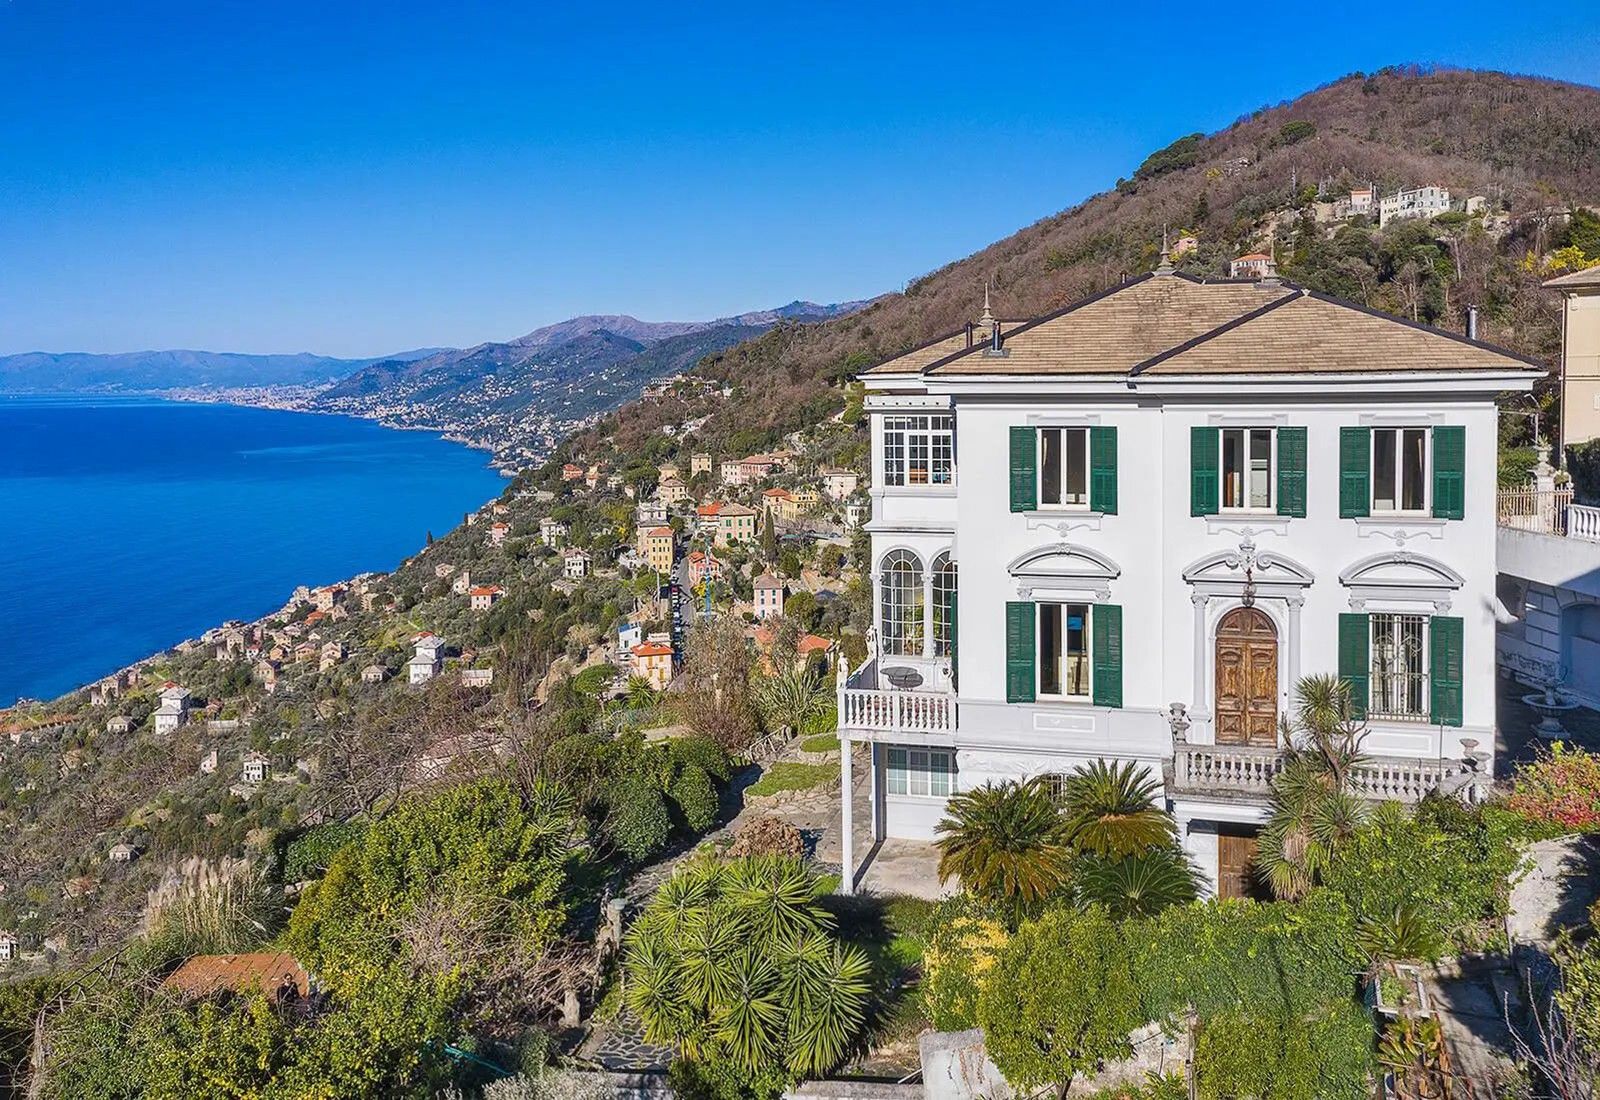 Obrázky Exkluzivní historická vila v Ligurii s fantastickým výhledem na moře